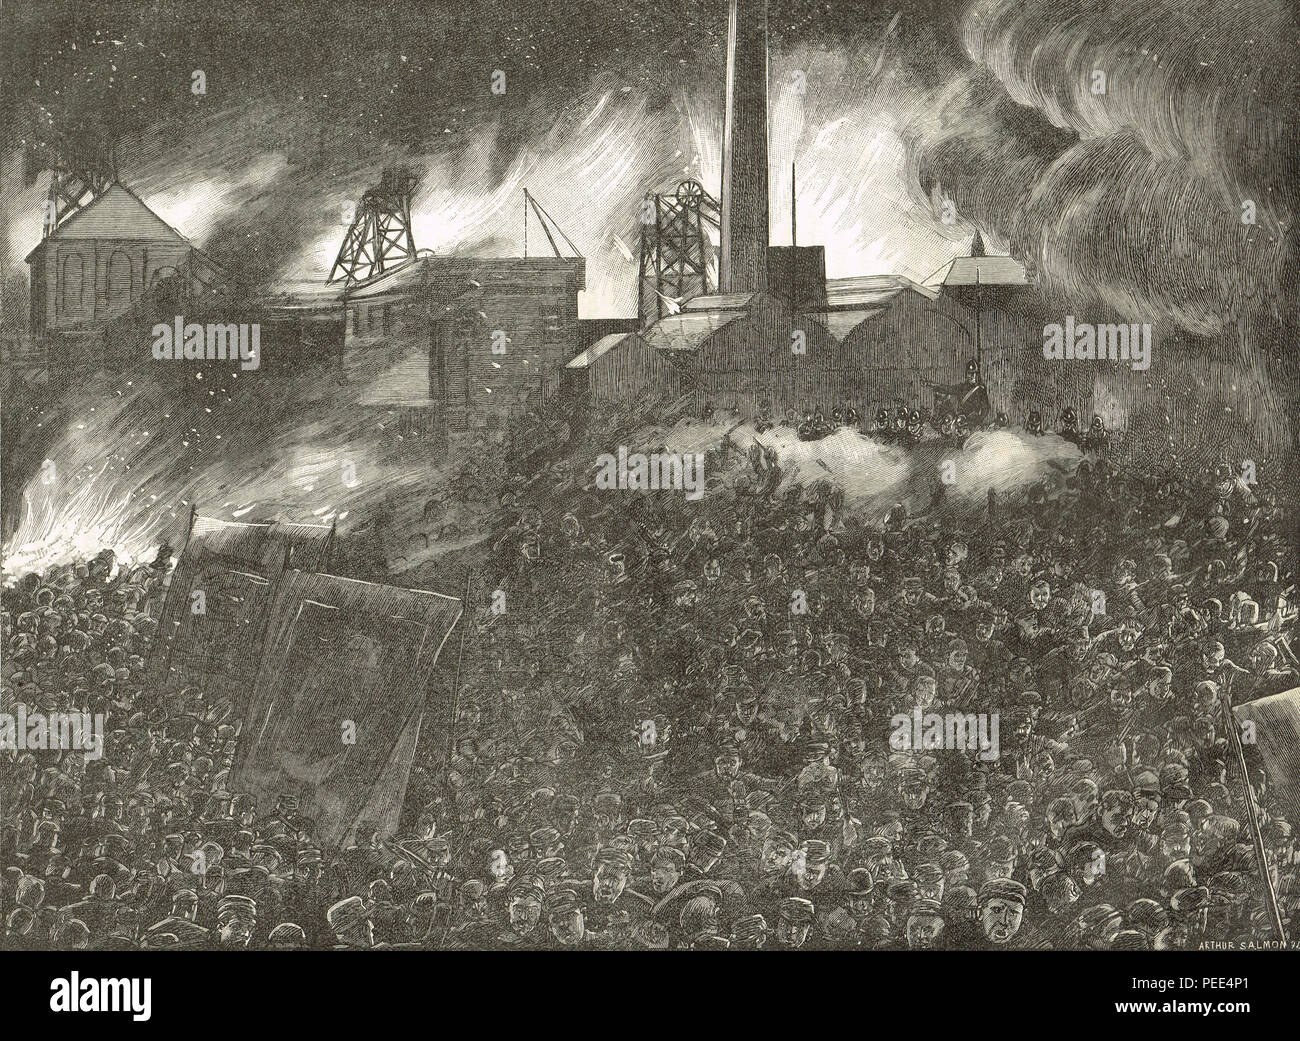 Soldaten schießen auf eine Masse demonstrieren auf der Zeche Tore von Ackton Halle Grube, während der featherstone Unruhen, 7. September 1893, nach einer Lesung des Riot Act Stockfoto